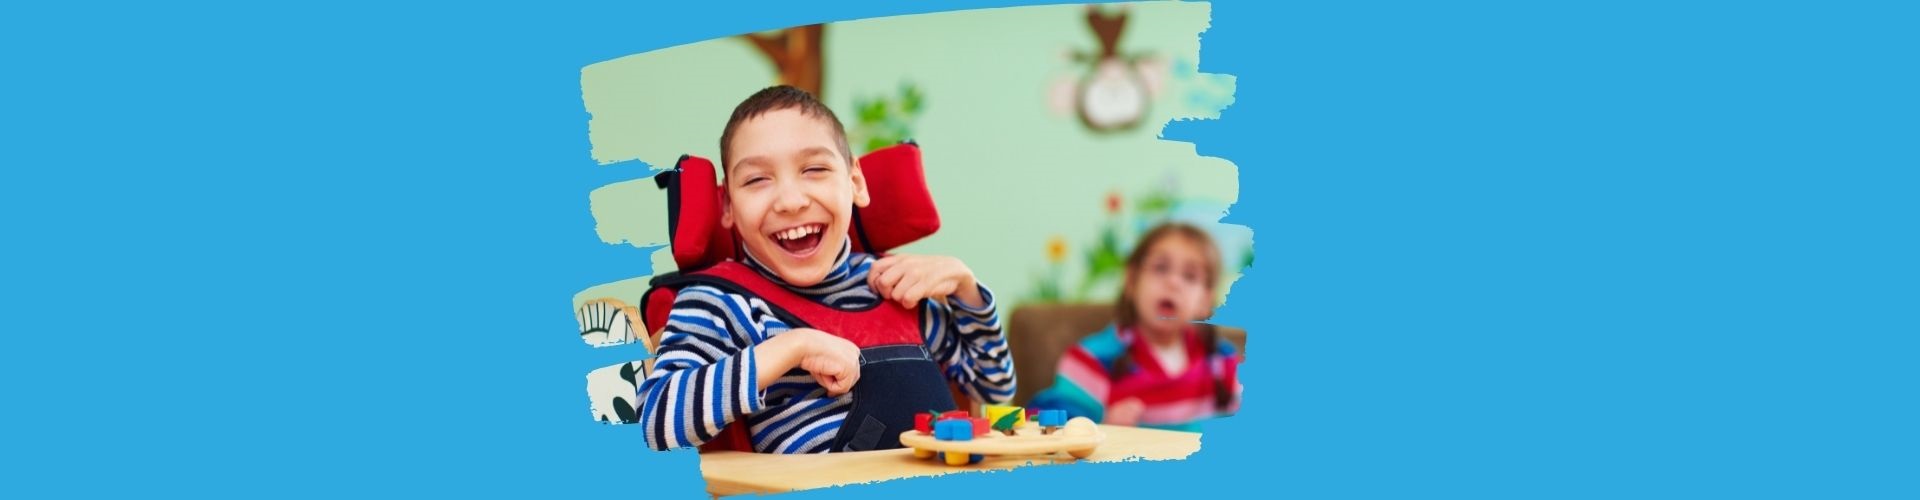 Eine Junge mit einer Behinderung im Rollstuhl. Er sitzt an einem Tisch mit Spielsachen. Im Hintergrund sieht man ein junges Mädchen mit eine Behinderung